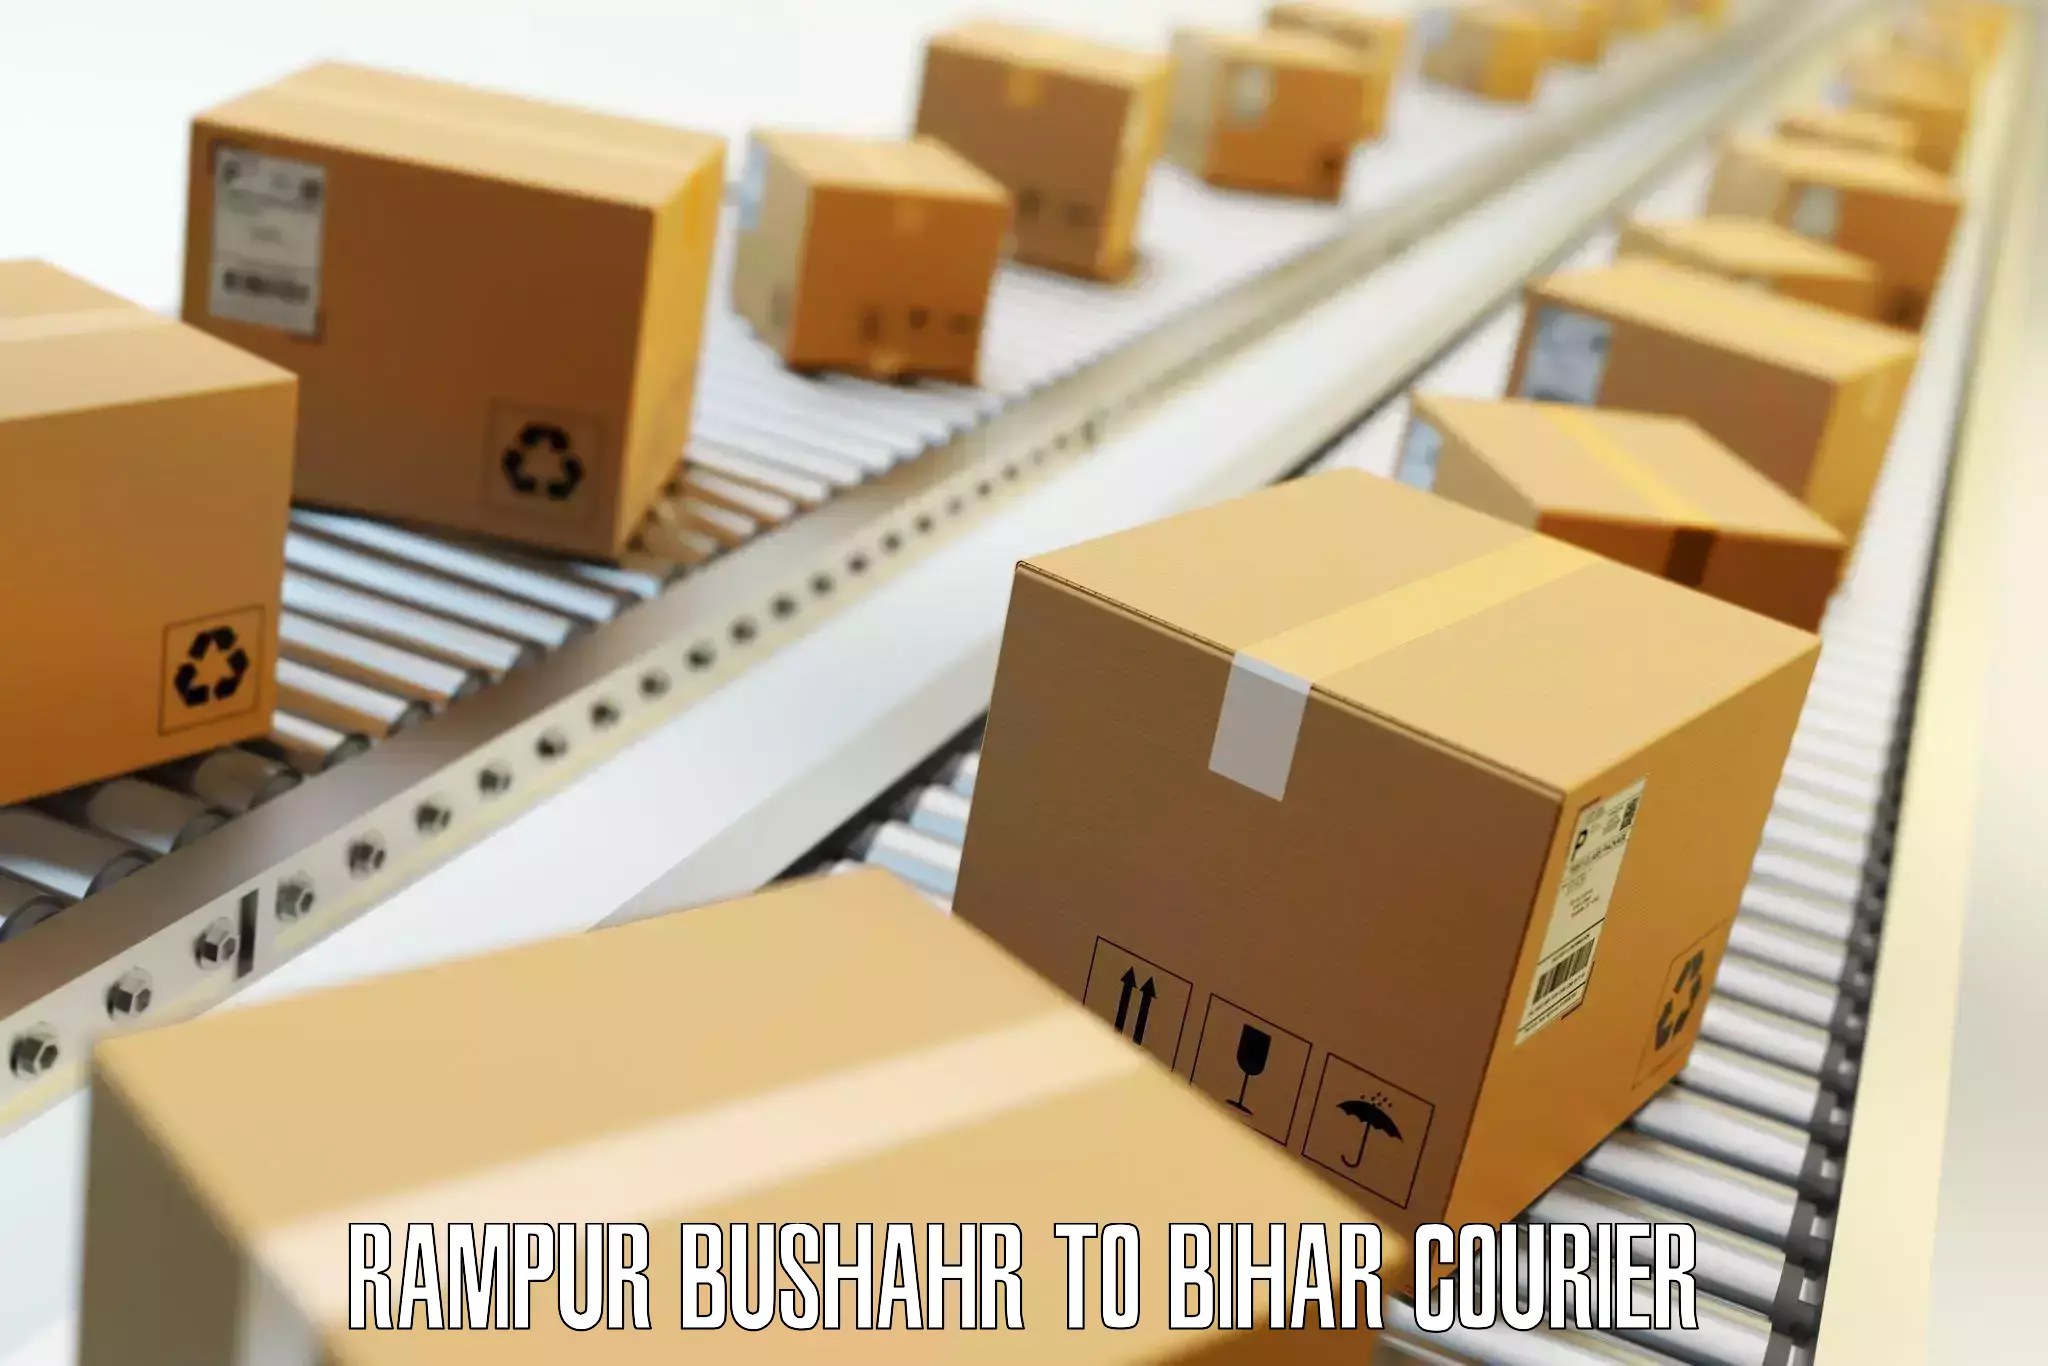 Luggage courier logistics Rampur Bushahr to IIIT Bhagalpur